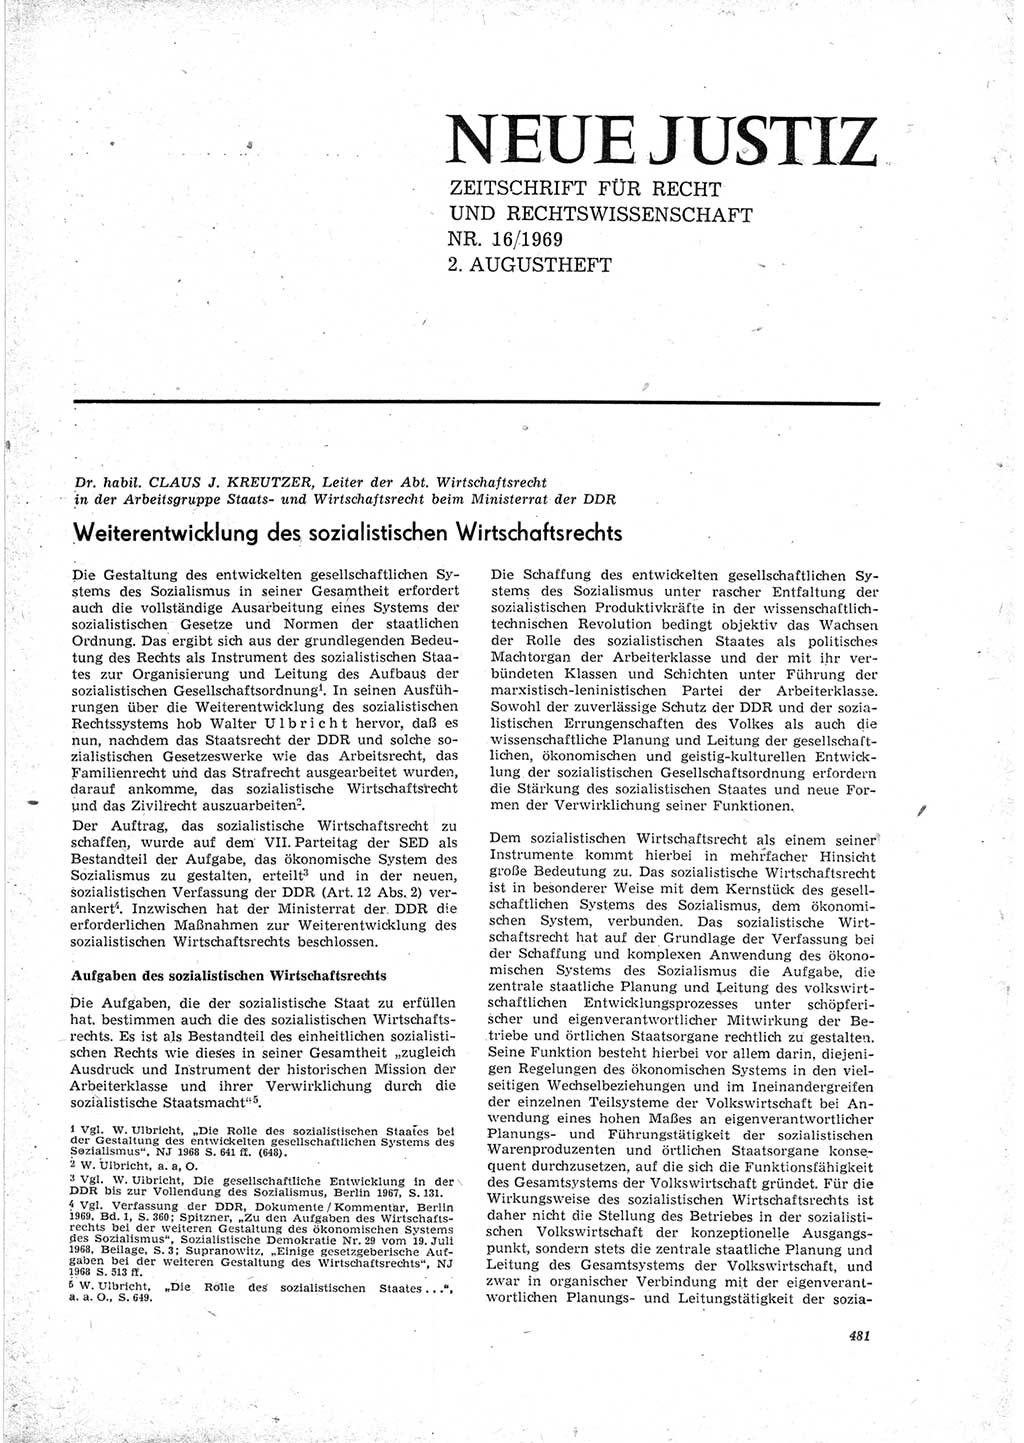 Neue Justiz (NJ), Zeitschrift für Recht und Rechtswissenschaft [Deutsche Demokratische Republik (DDR)], 23. Jahrgang 1969, Seite 481 (NJ DDR 1969, S. 481)